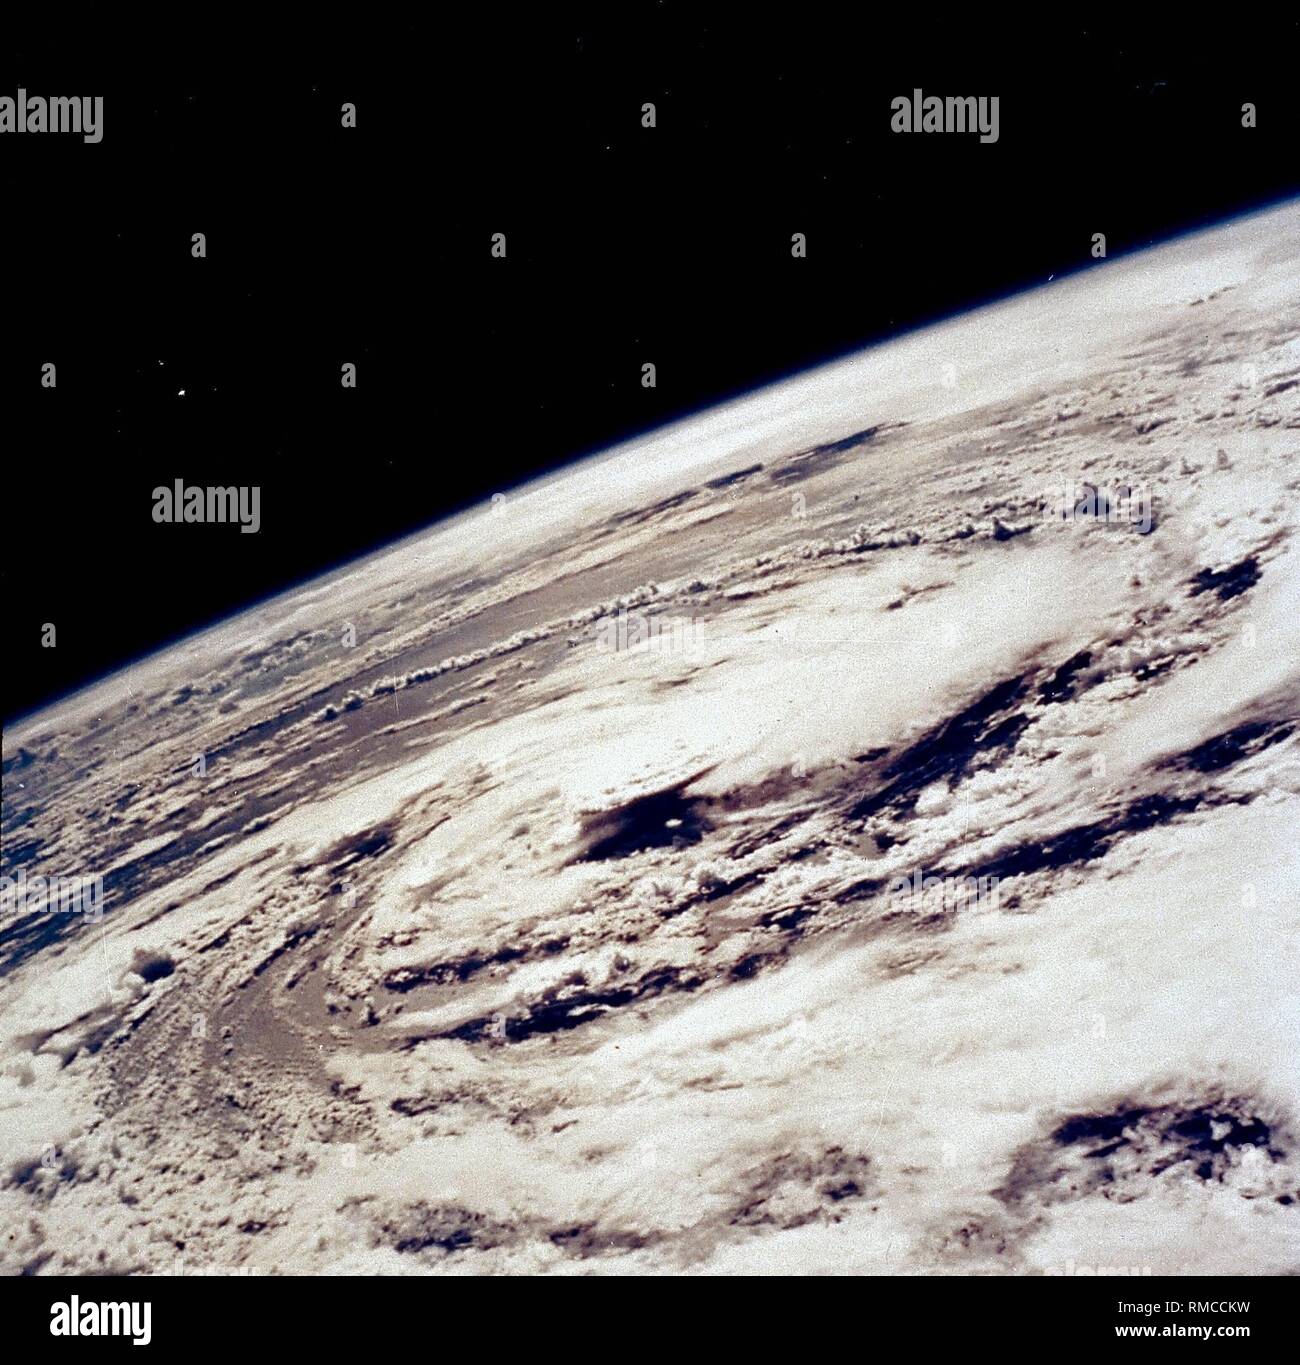 Vue détaillée de la terre avec l'ouragan 'Gladys'. La photo a été prise dans le cadre de la mission Apollo 7 de la NASA. Banque D'Images